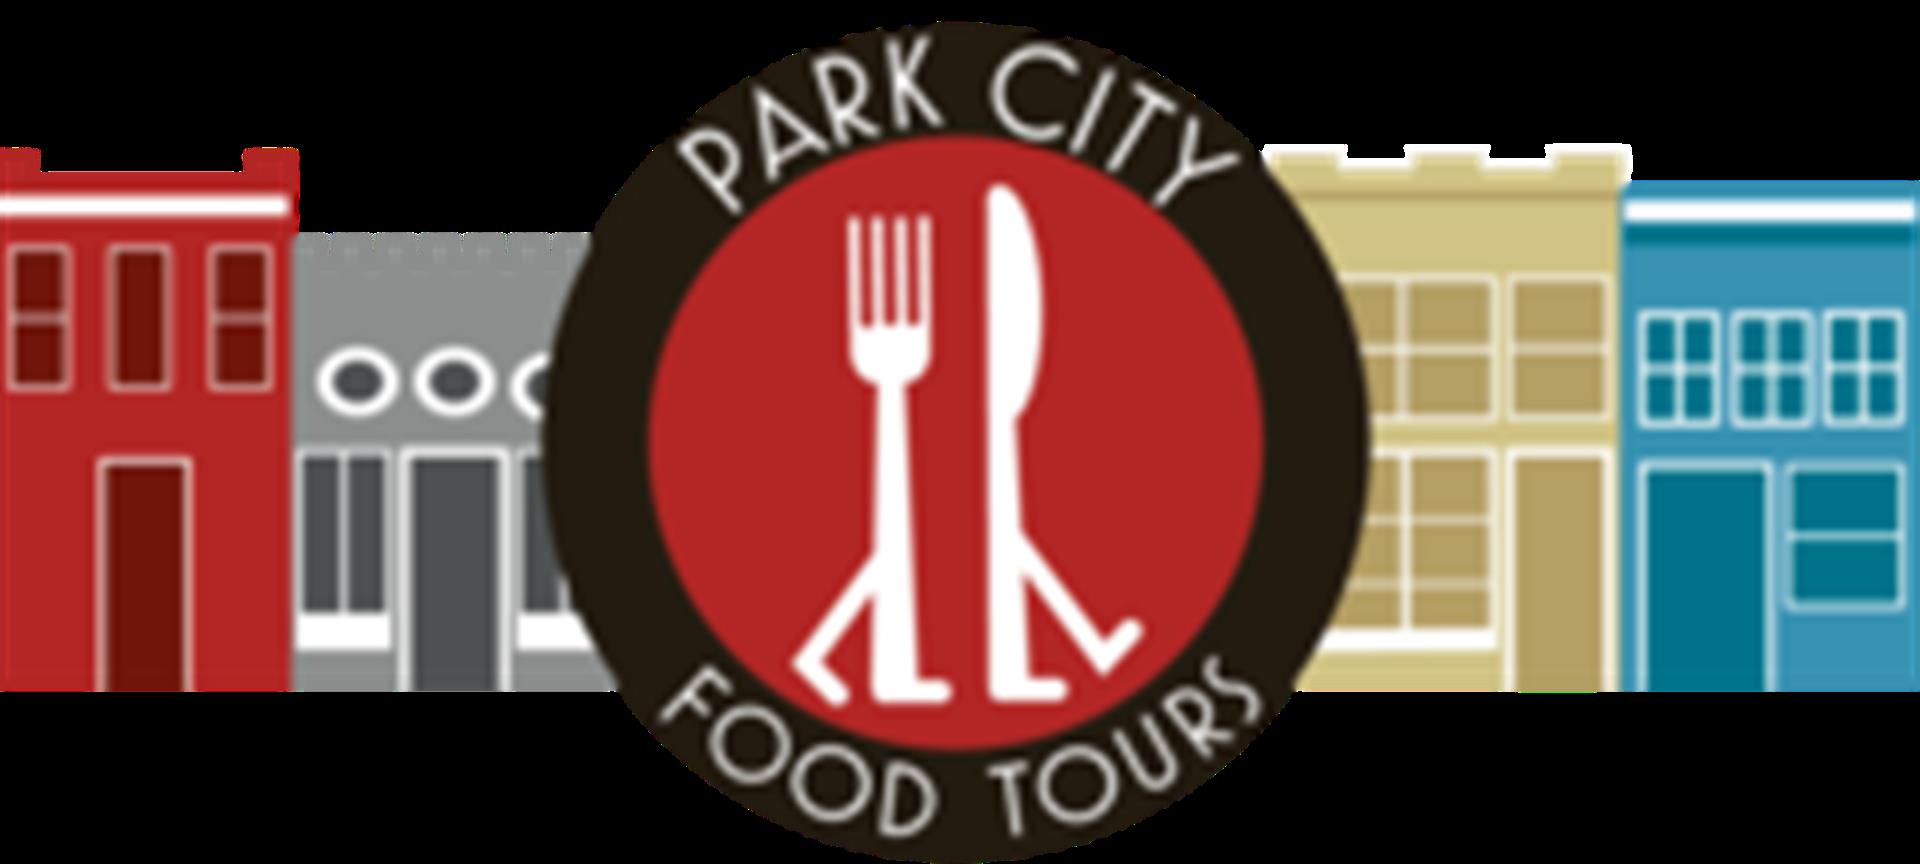 park city food tours